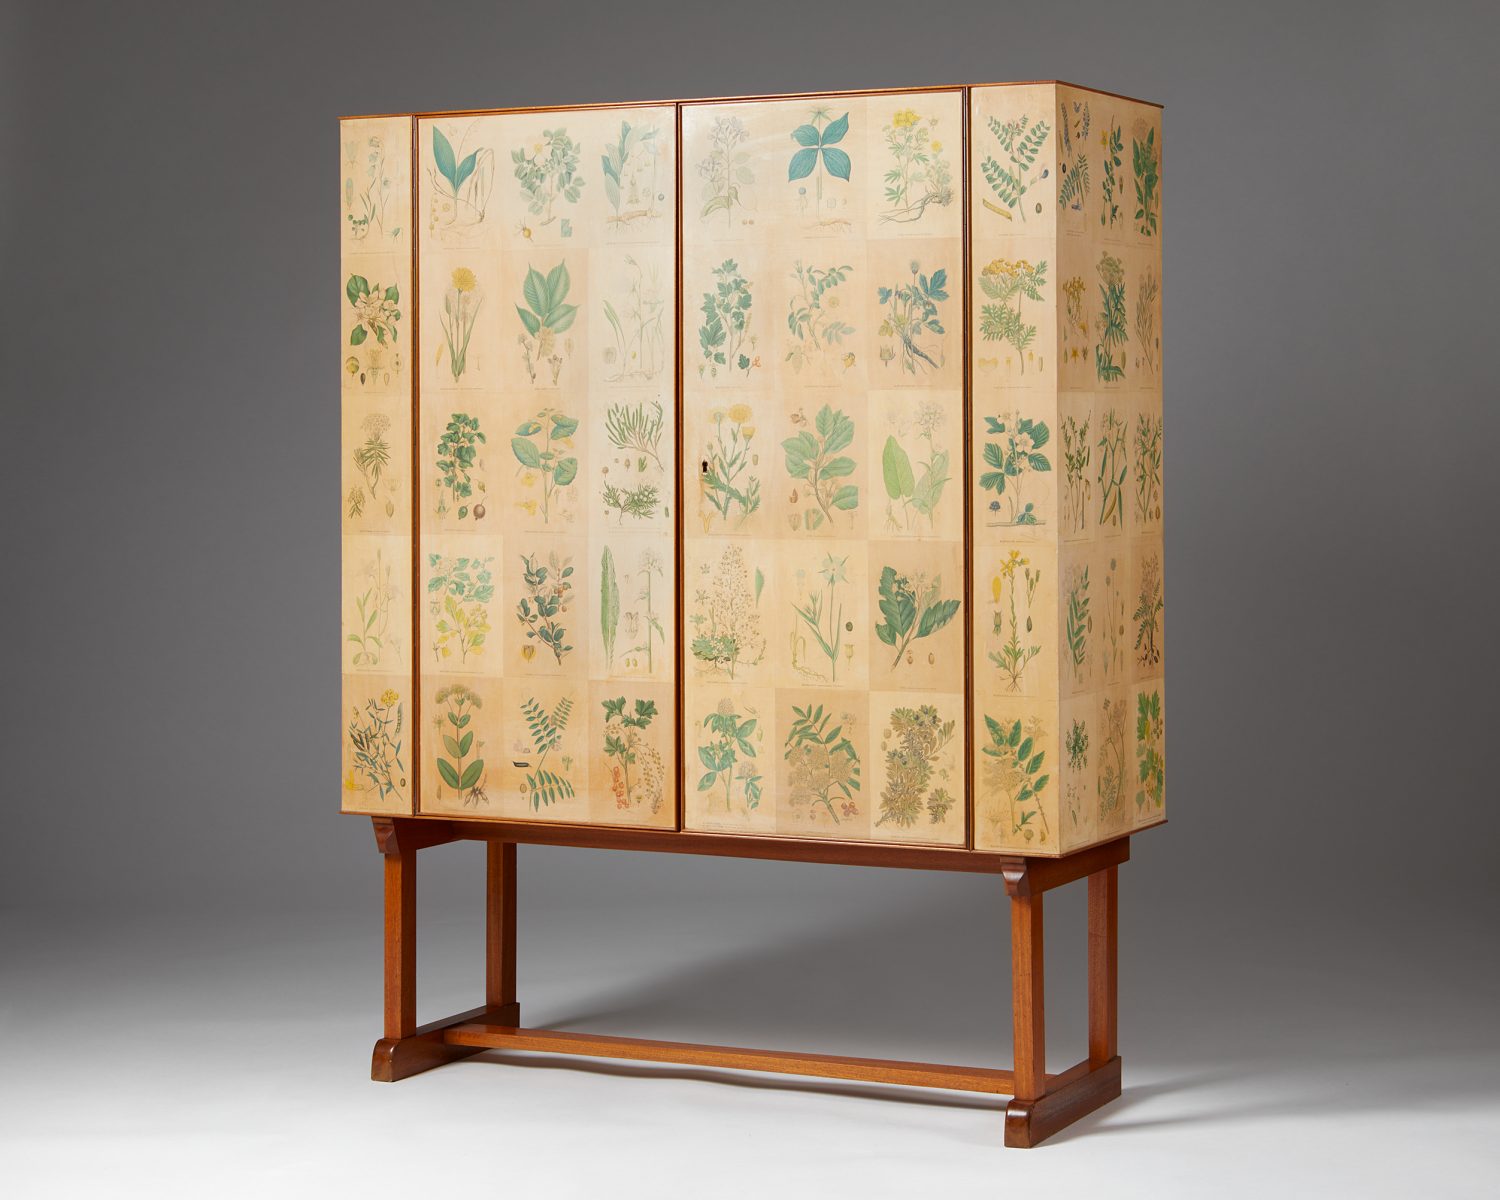 Scandinavia design at Modernity: 'Flora' cabinet designed by Josef Frank for Svenskt Tenn